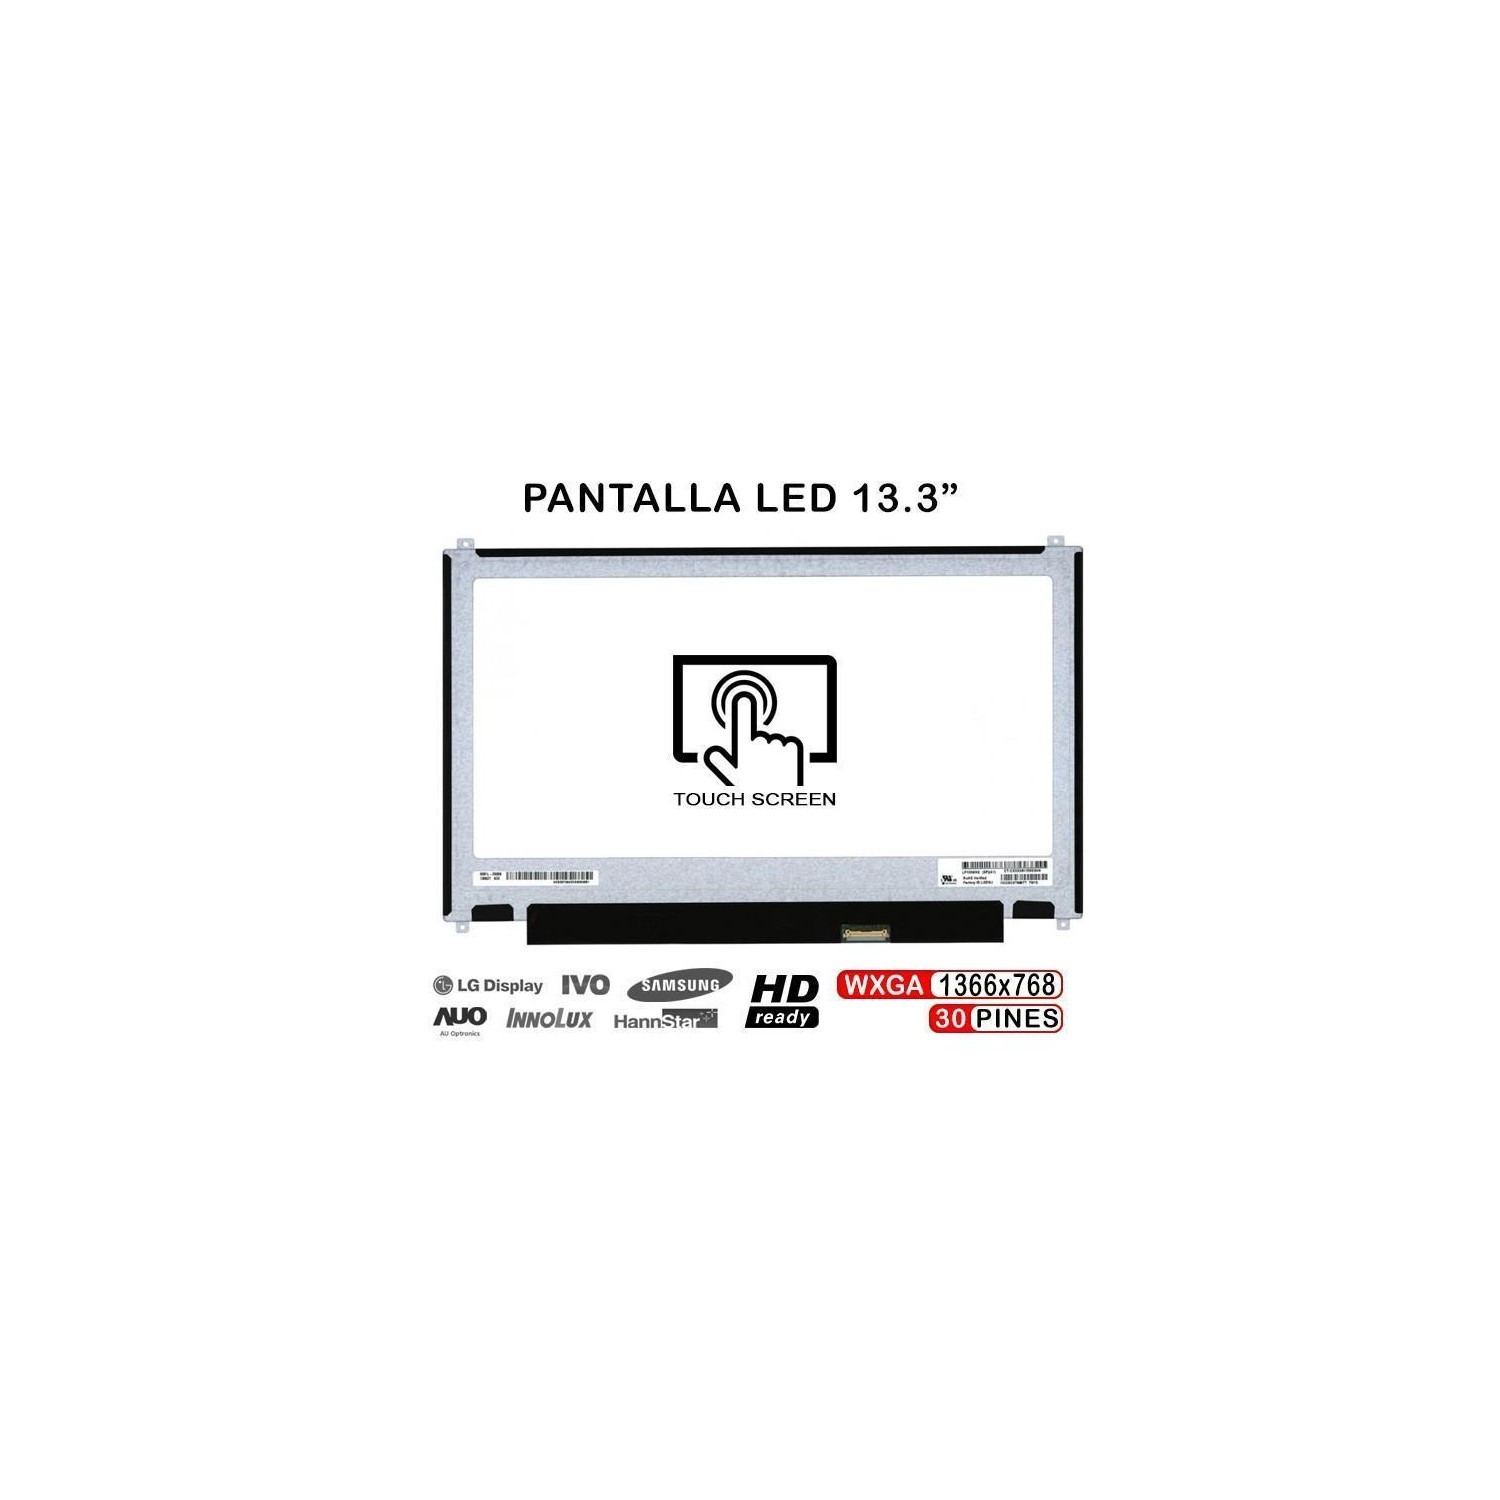 PANTALLA LED DE 13.3" PARA PORTÁTIL LP133WH2(SP)(B6)